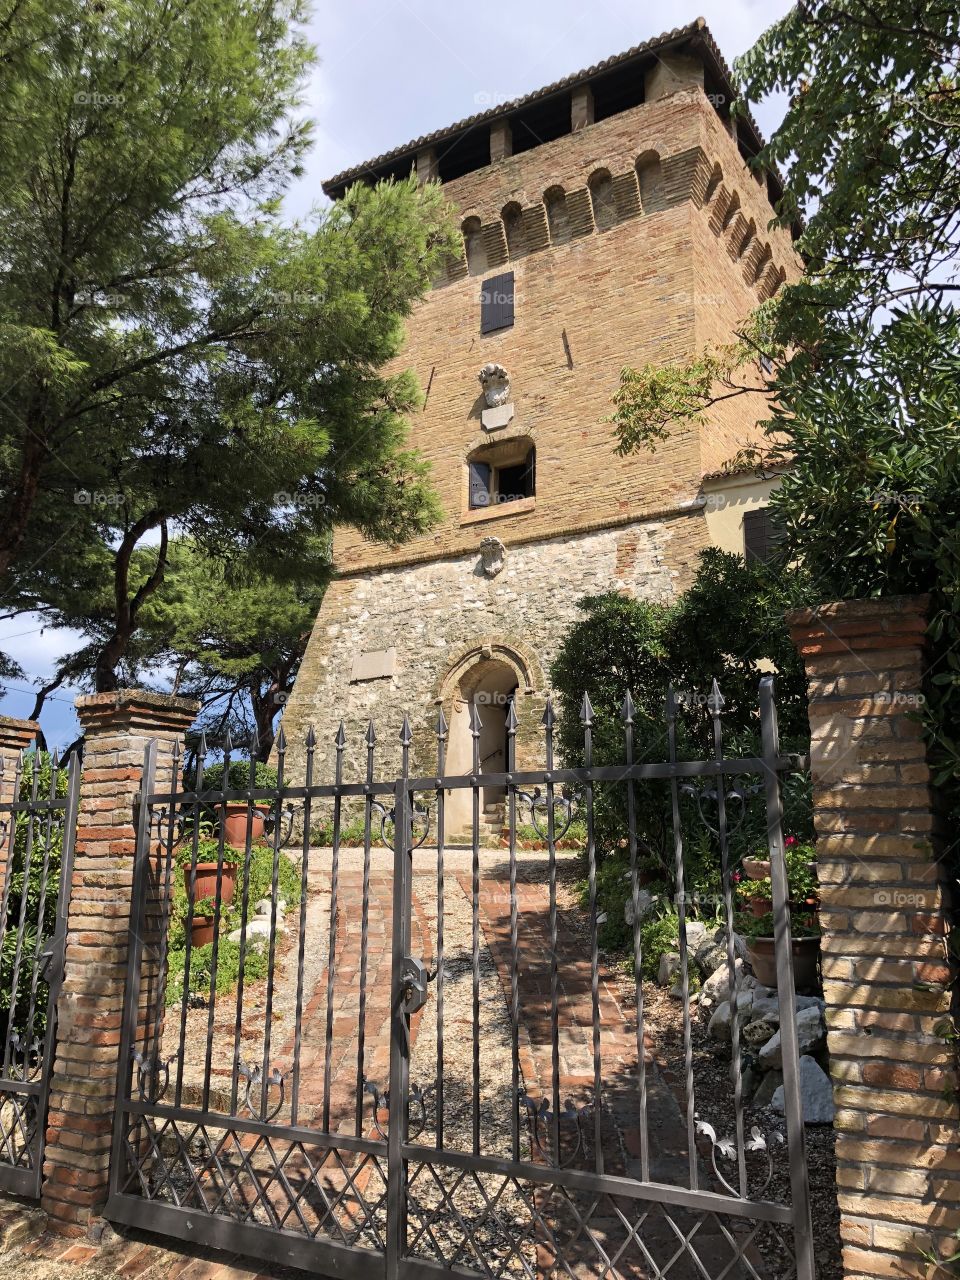 De Bosis Tower, the Napoleonic Fortress, Portonovo bay, Marche region, Italy